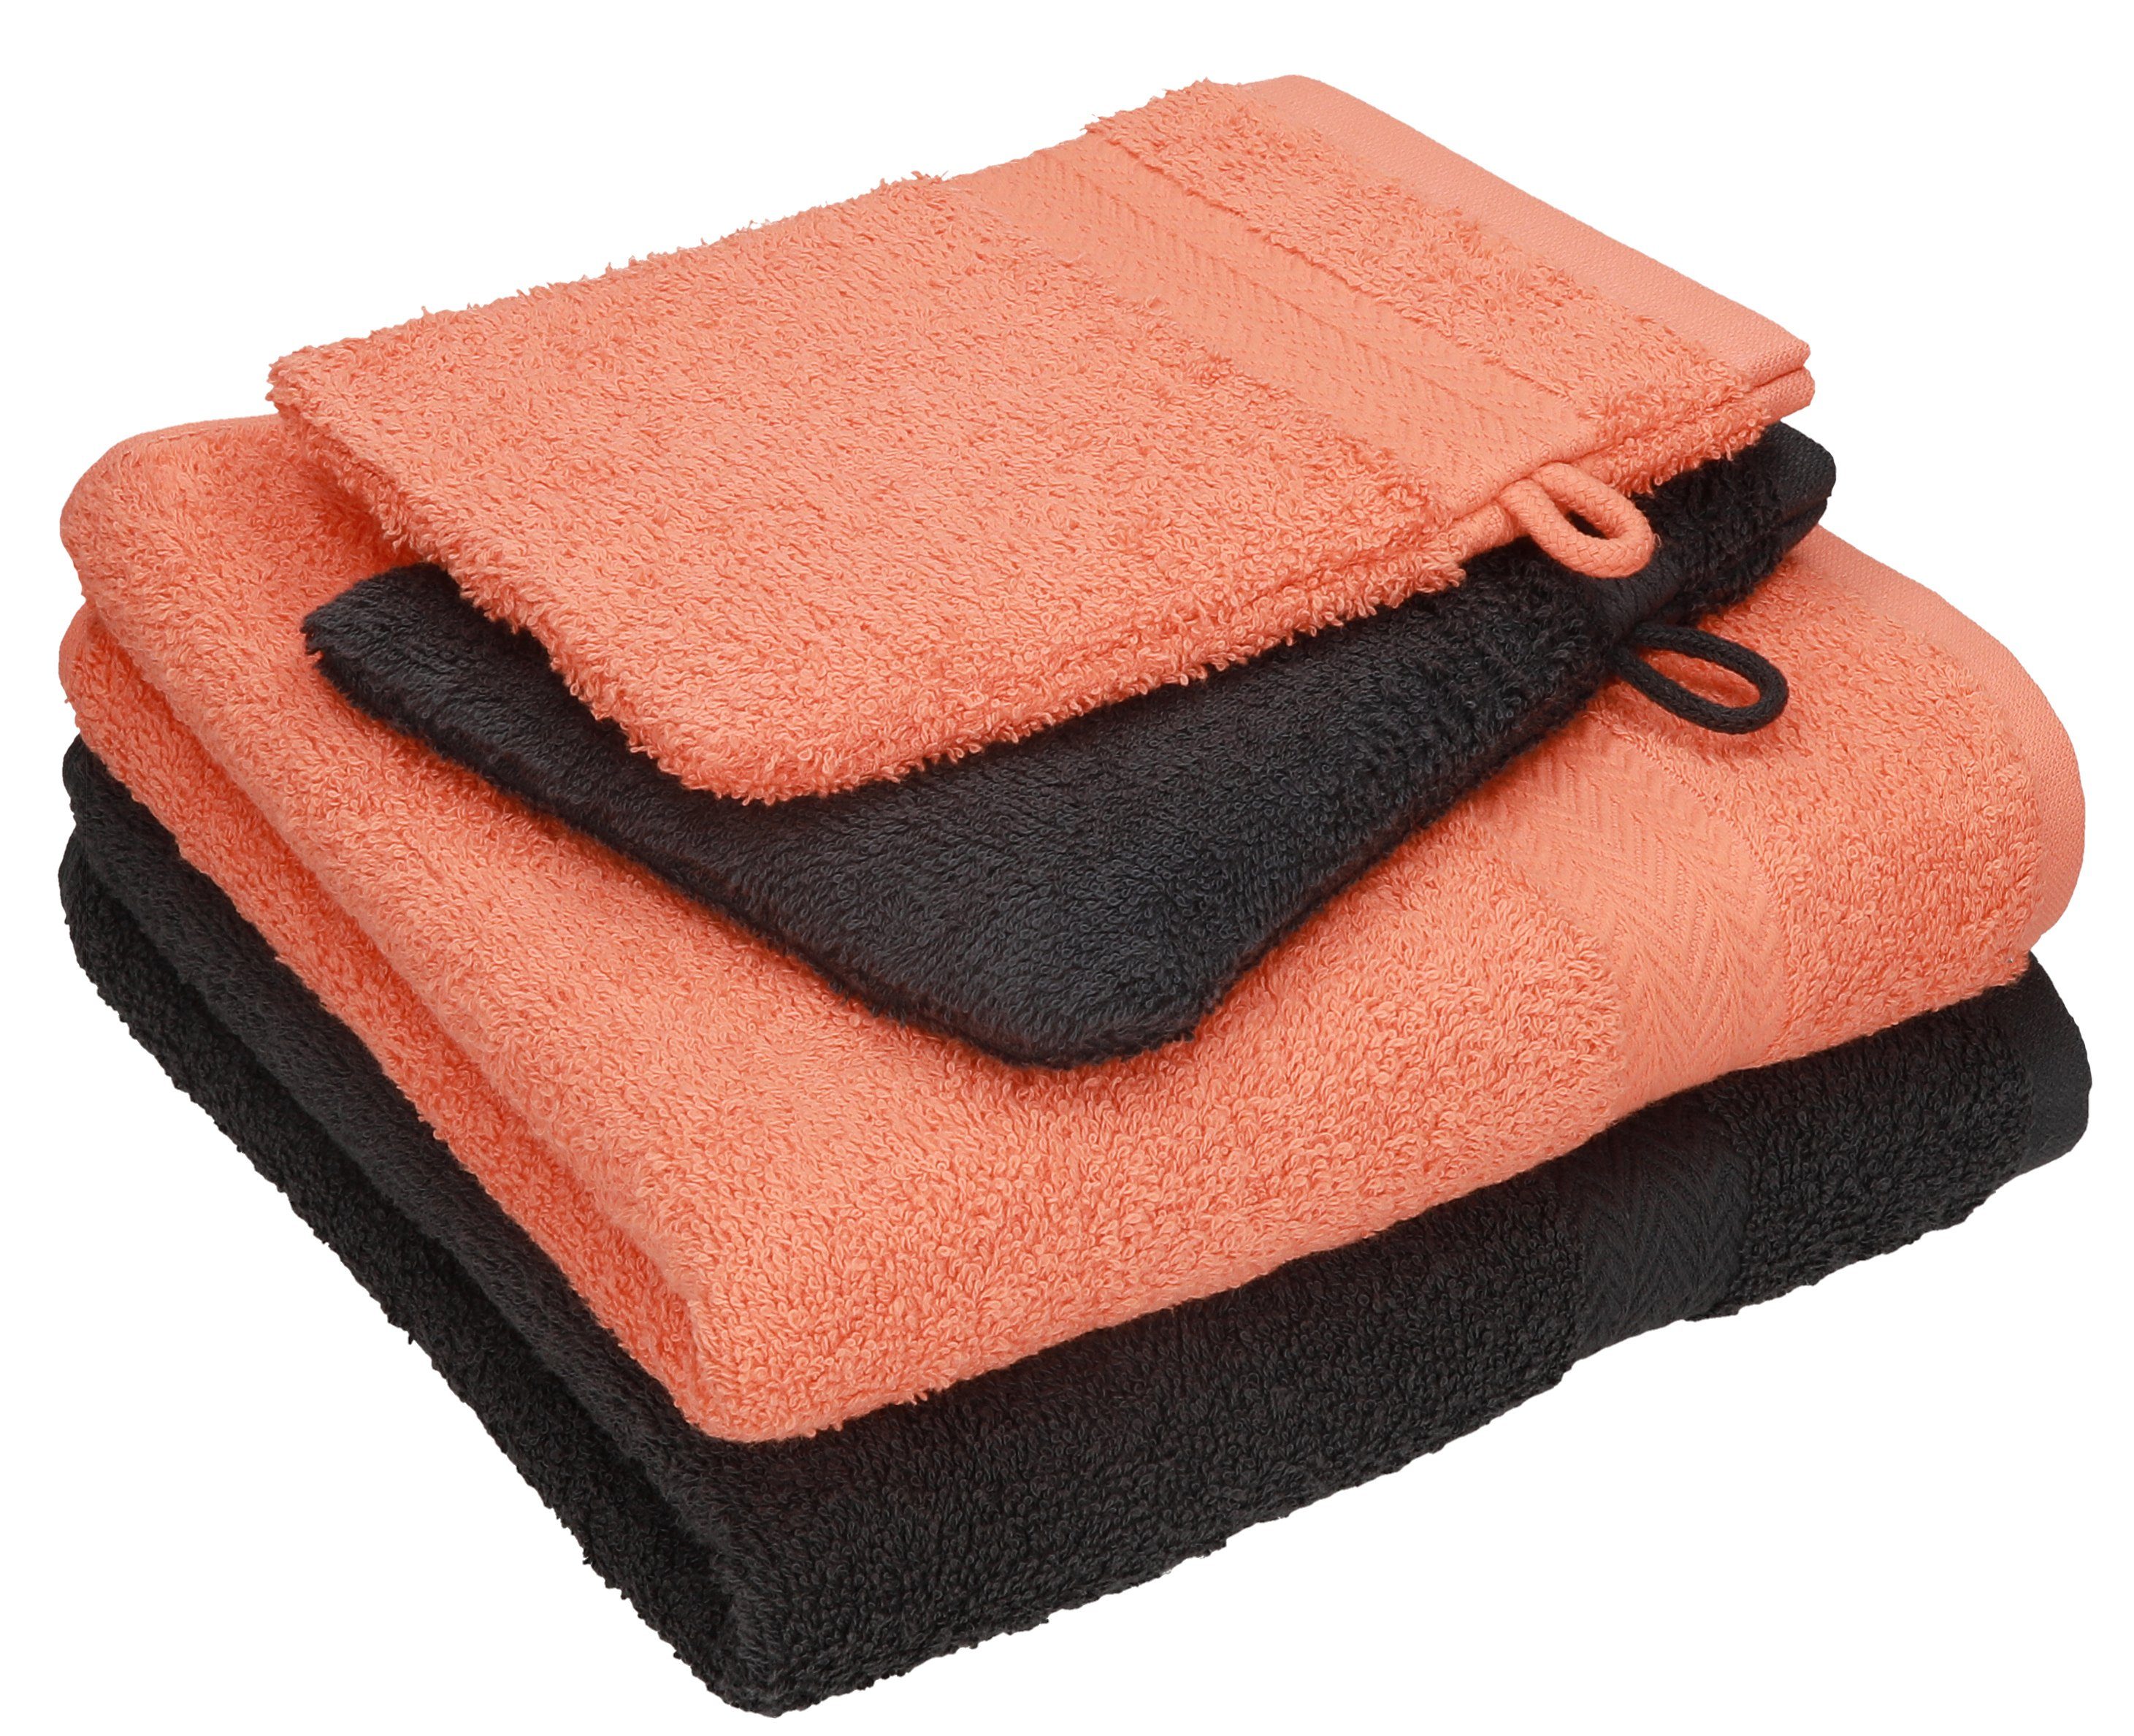 Betz Handtuch Set 4 tlg. Handtuch Set HAPPY Pack 100% Baumwolle 2 Handtücher 2 Waschhandschuhe, 100% Baumwolle graphit grau - orange | Handtuch-Sets